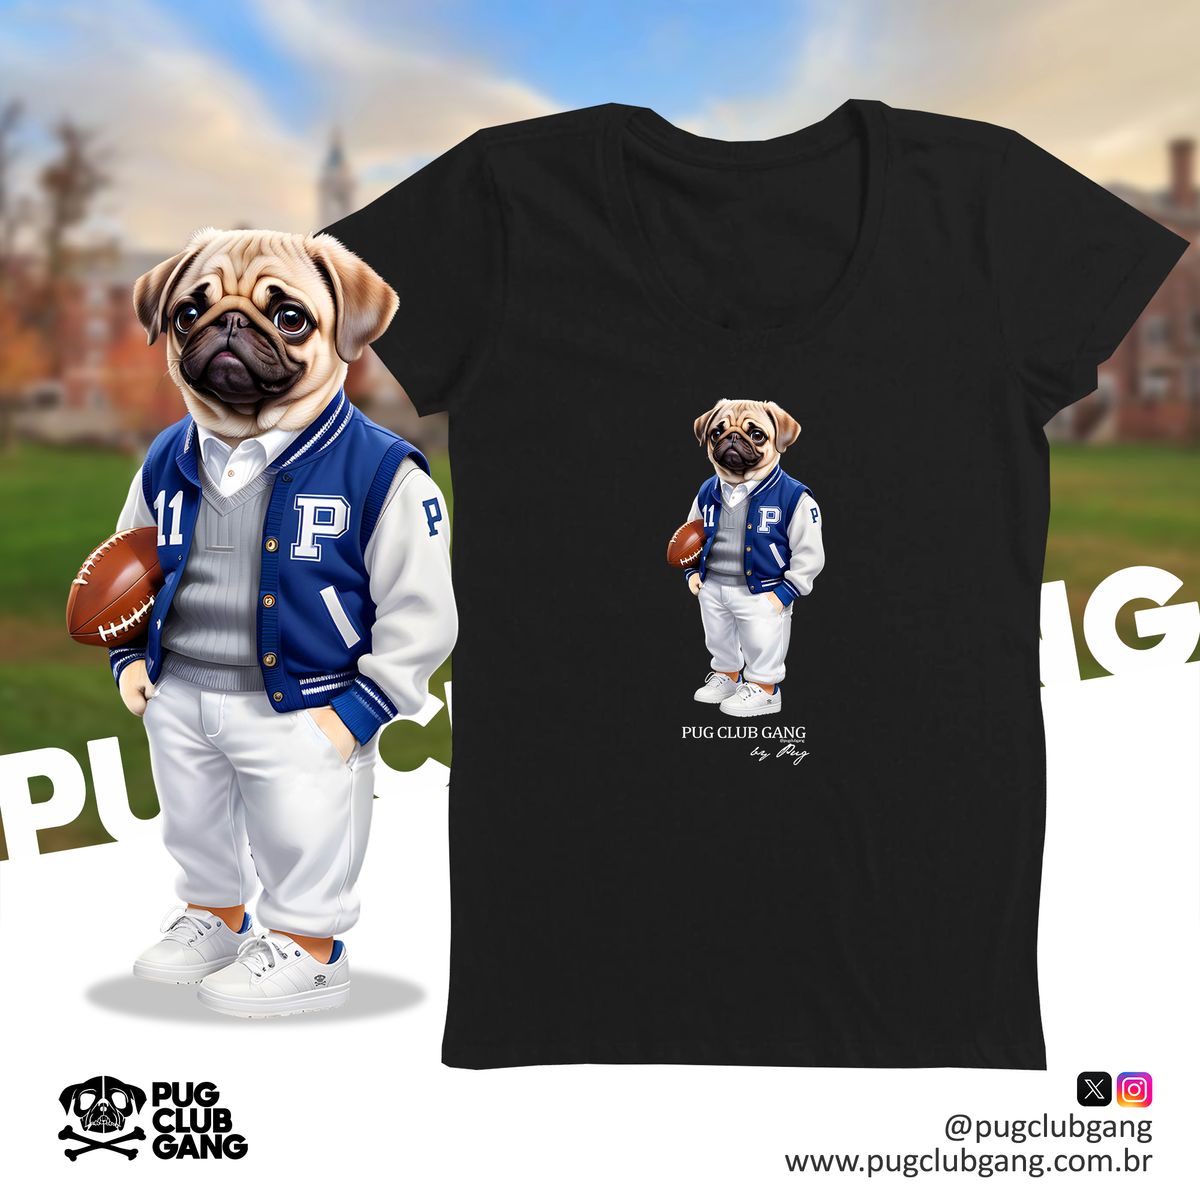 Nome do produto: Camiseta Baby Long Pug - Universidade Pug